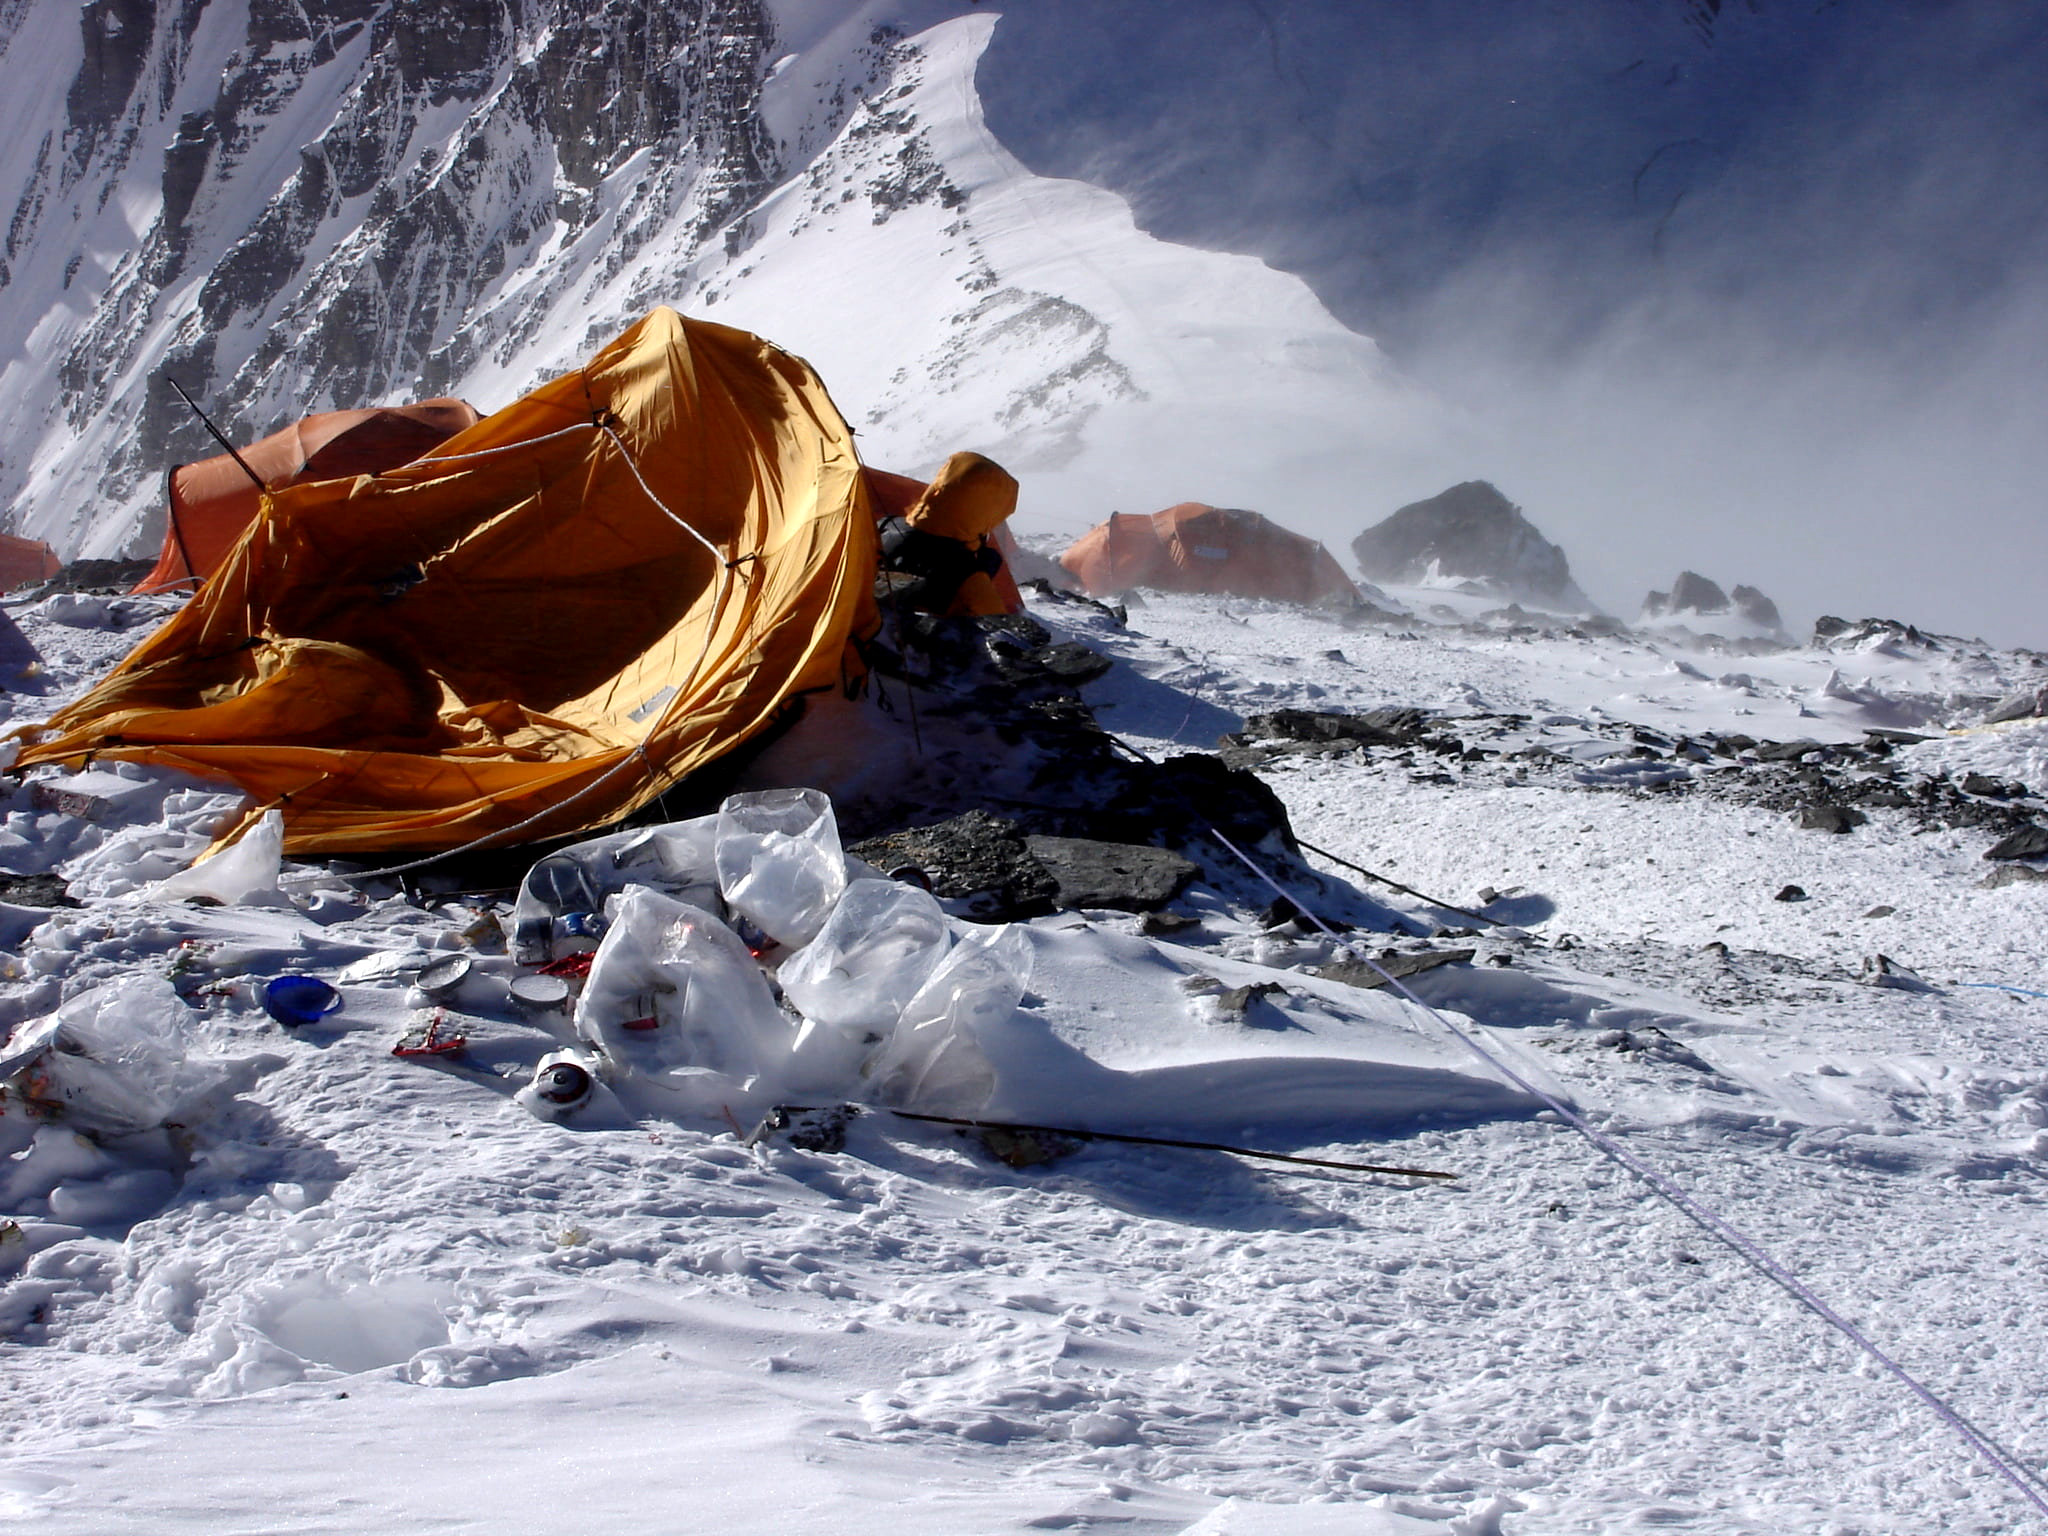 Сильный ветер - одна из опасностей подстерегающая альпинистов